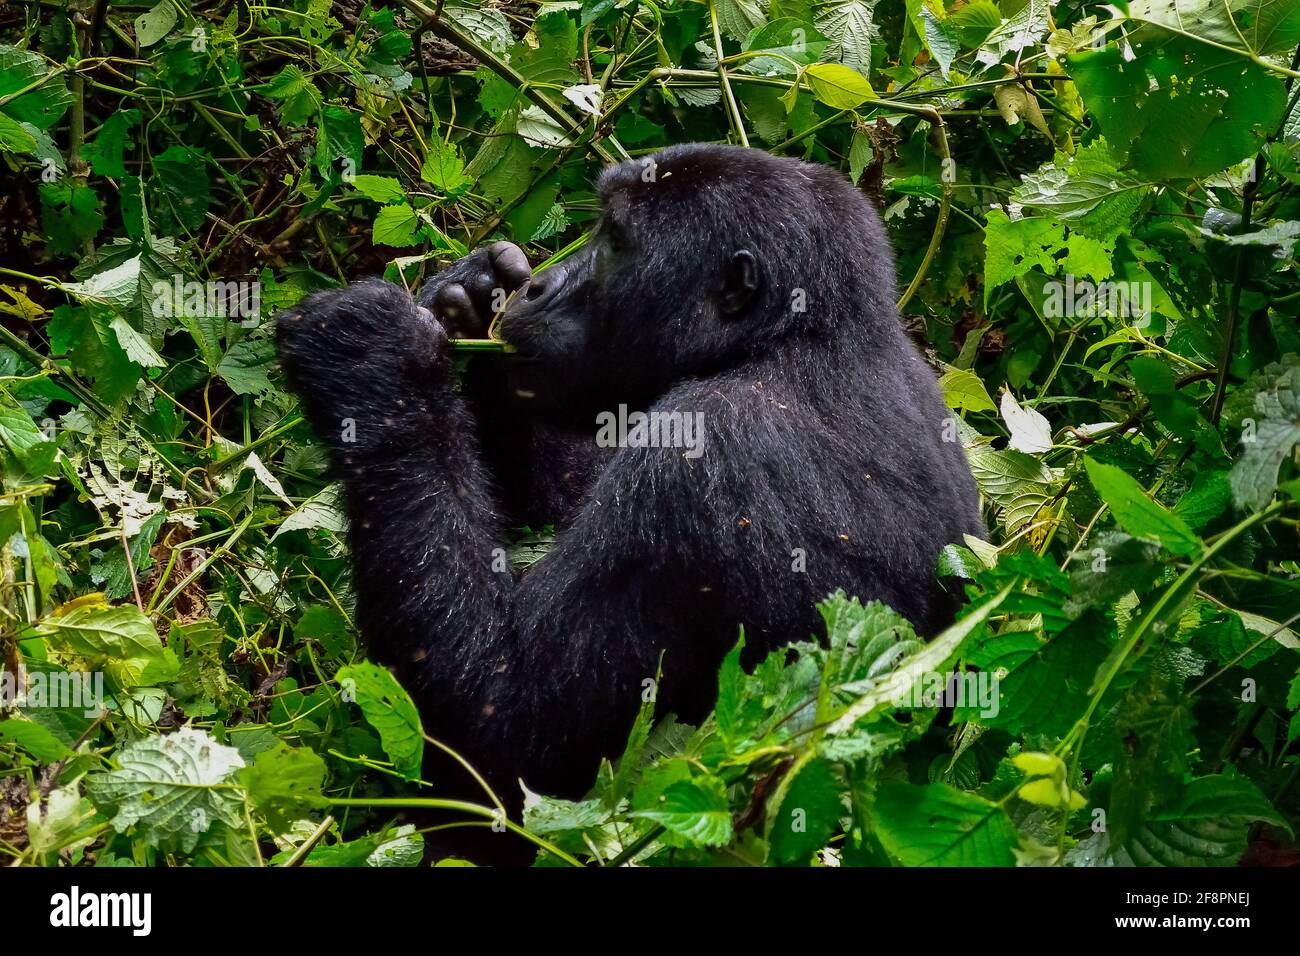 Mangiare. Uno dei circa 400 Gorilla della montagna orientale in via di estinzione che vivono nell'impenetrabile Parco Nazionale di Bwindi, Uganda. Foto Stock